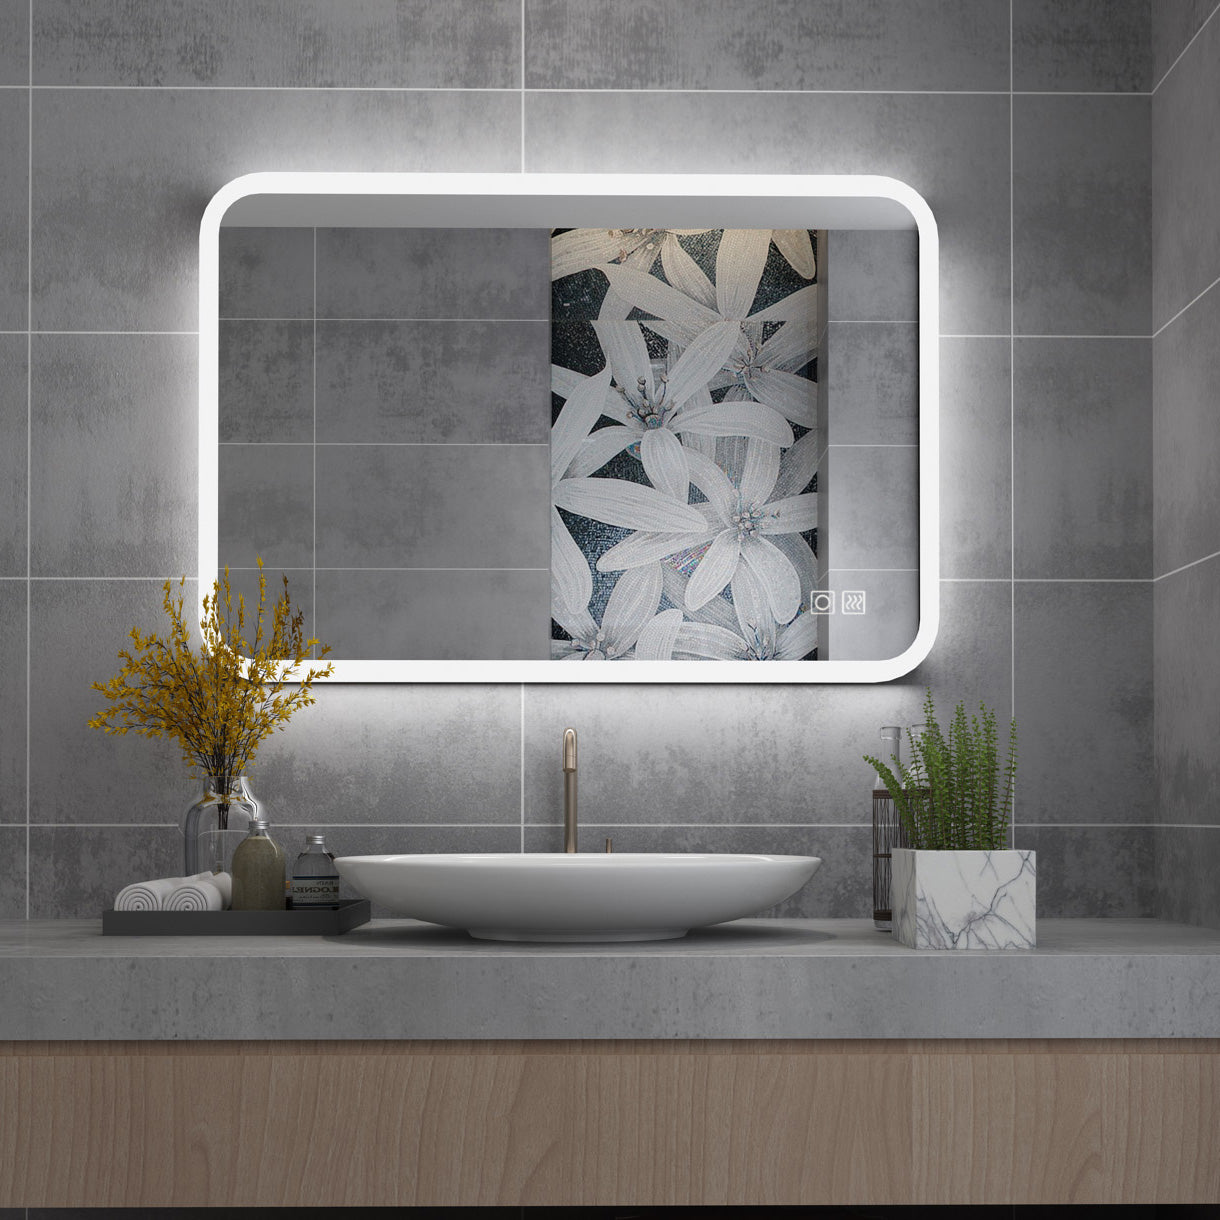 miqu badezimmerspiegel led badspiegel mit beleuchtung  kaltweiße/neutrale/warmweiße lichtspiegel wandspiegel mit touch-schalter  beschlagfrei 60x50